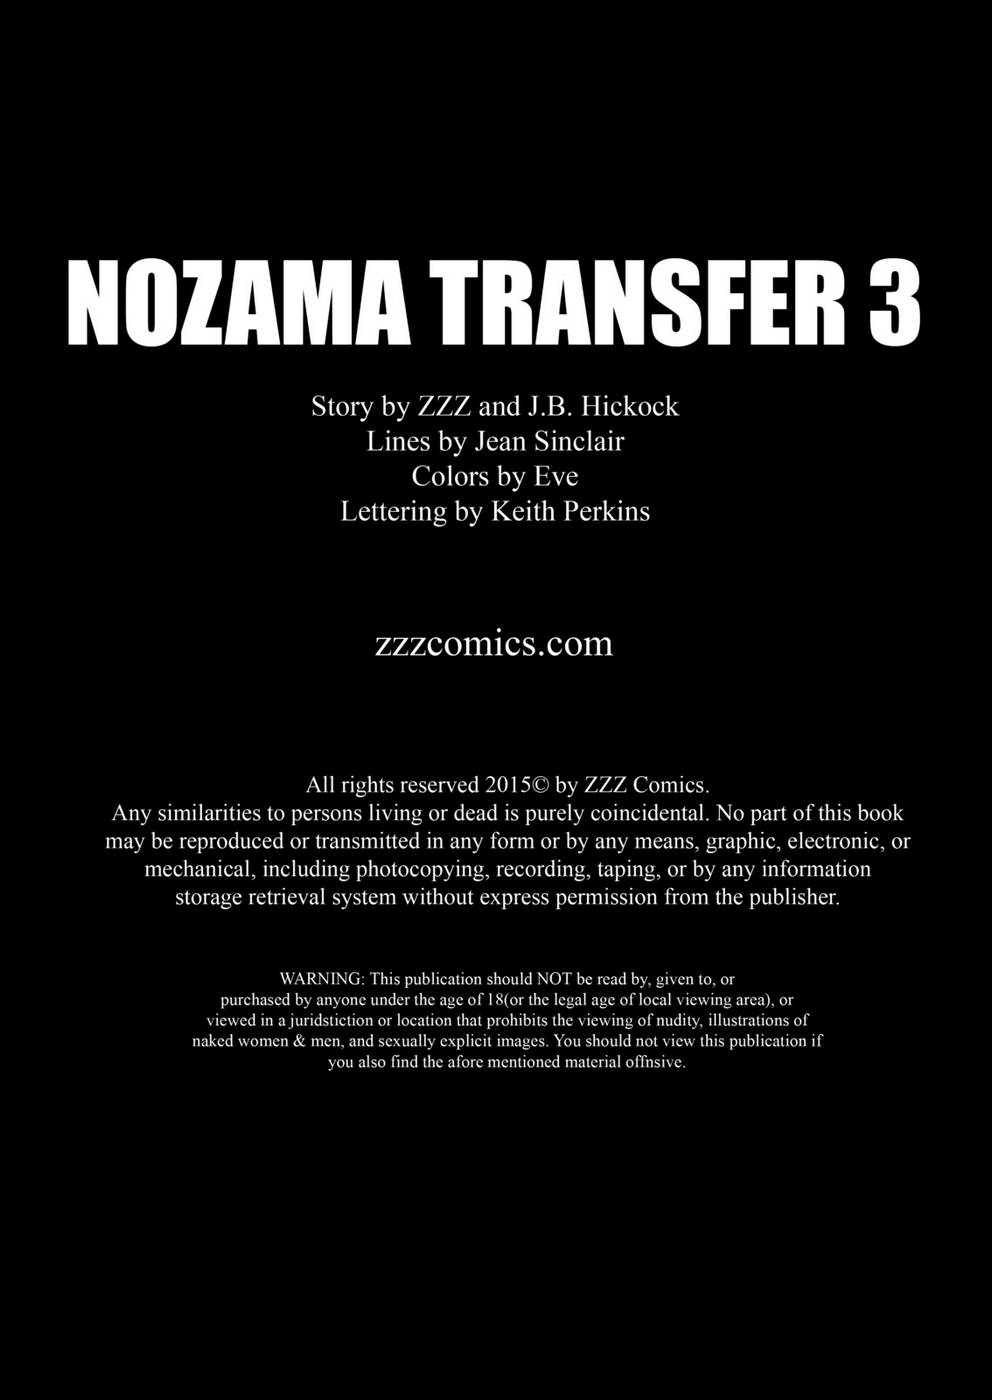 ззз nozama перевод 3